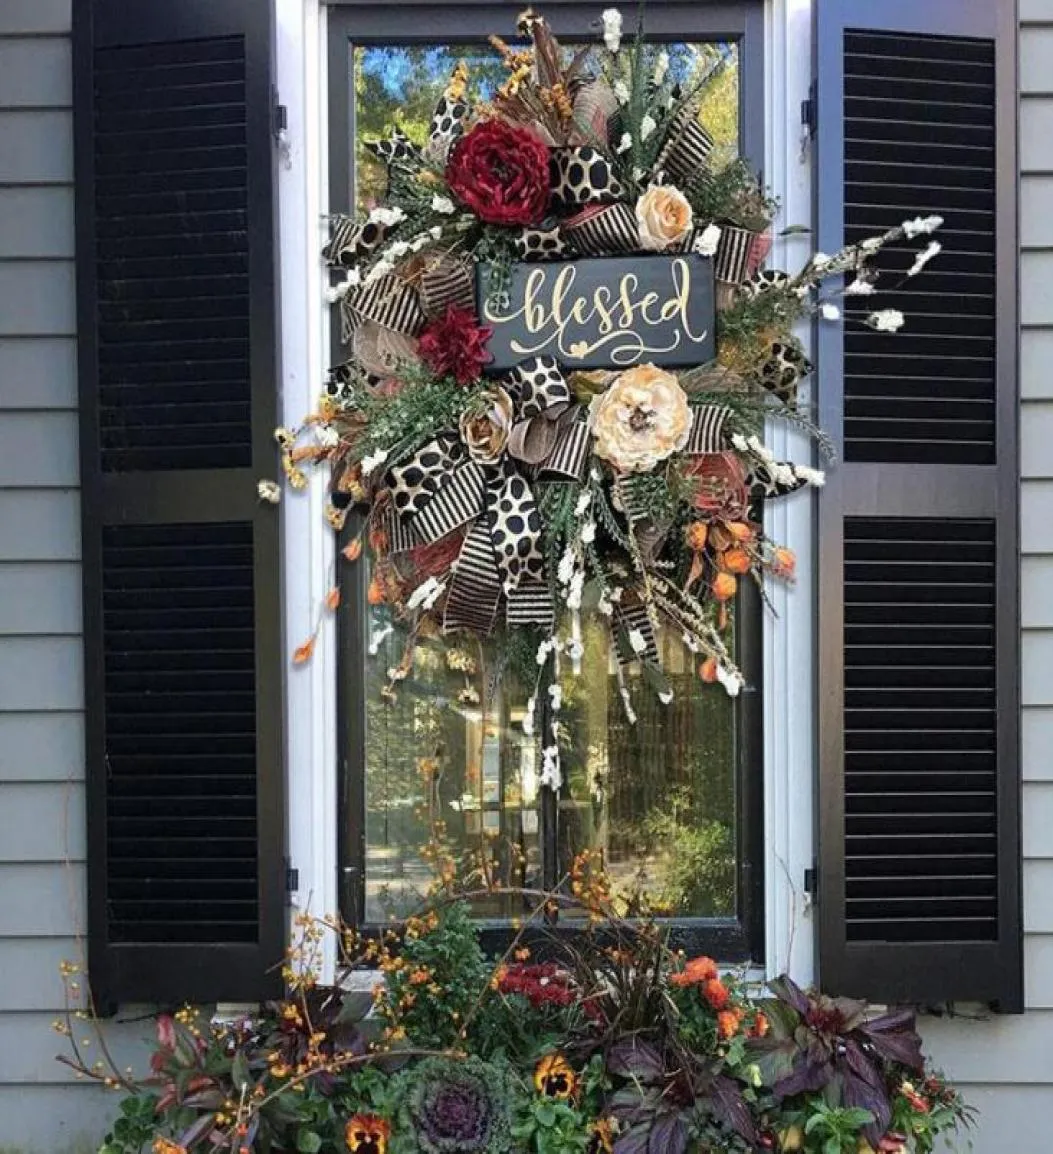 Dekoracyjne wieńce kwiaty jesienne przez cały rok drzwi frontowe realistyczne girlandowe domowe dekoracja wakacyjna A16453278